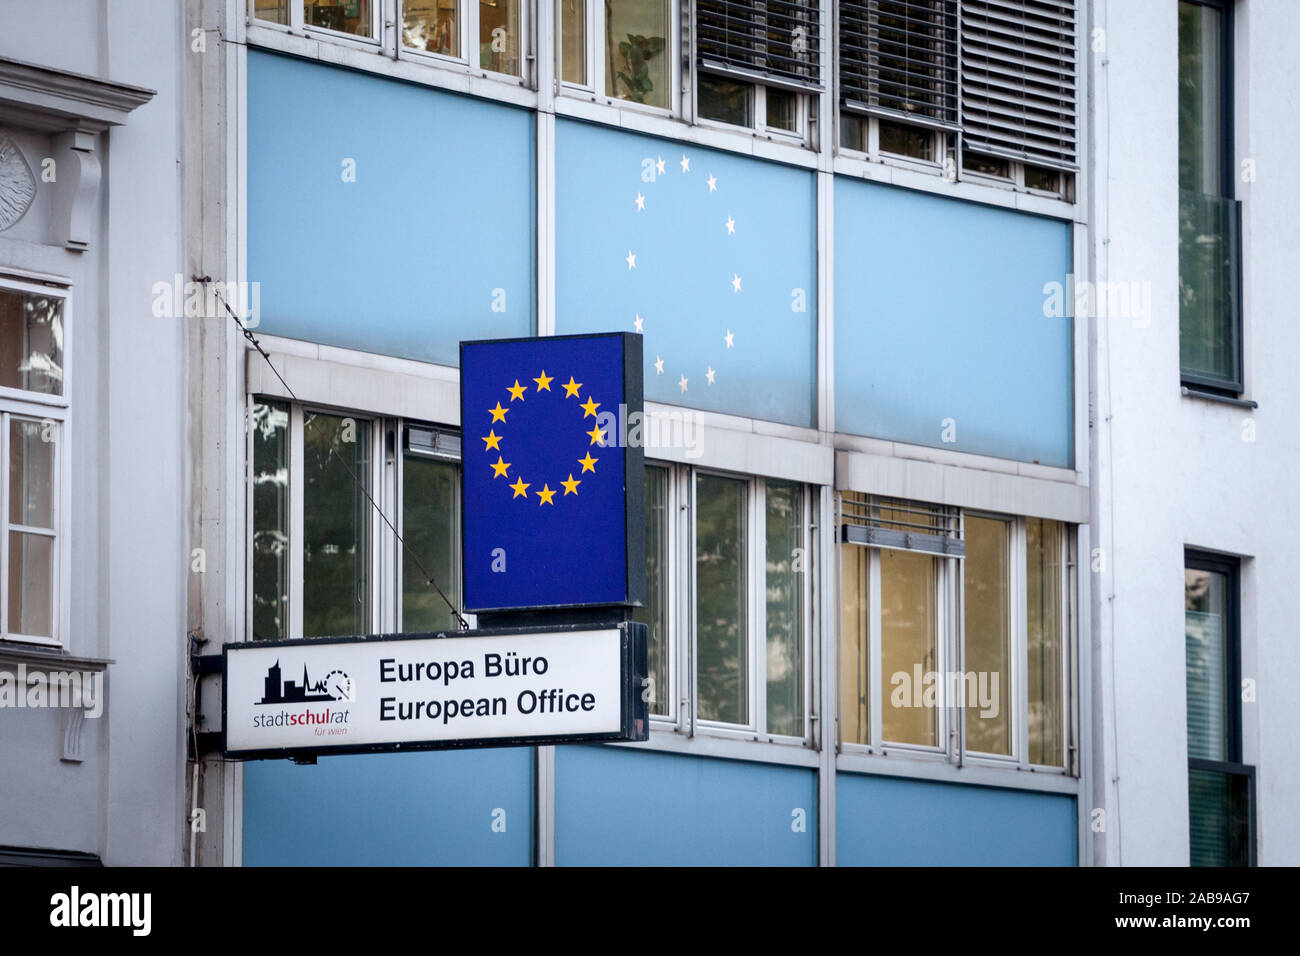 Vienne, Autriche - le 6 novembre 2019 : Bureau européen de Vienne, également appelé Europa Buro, dans le centre de Vienne. Il s'adresse aux personnes sensibilisants t Banque D'Images